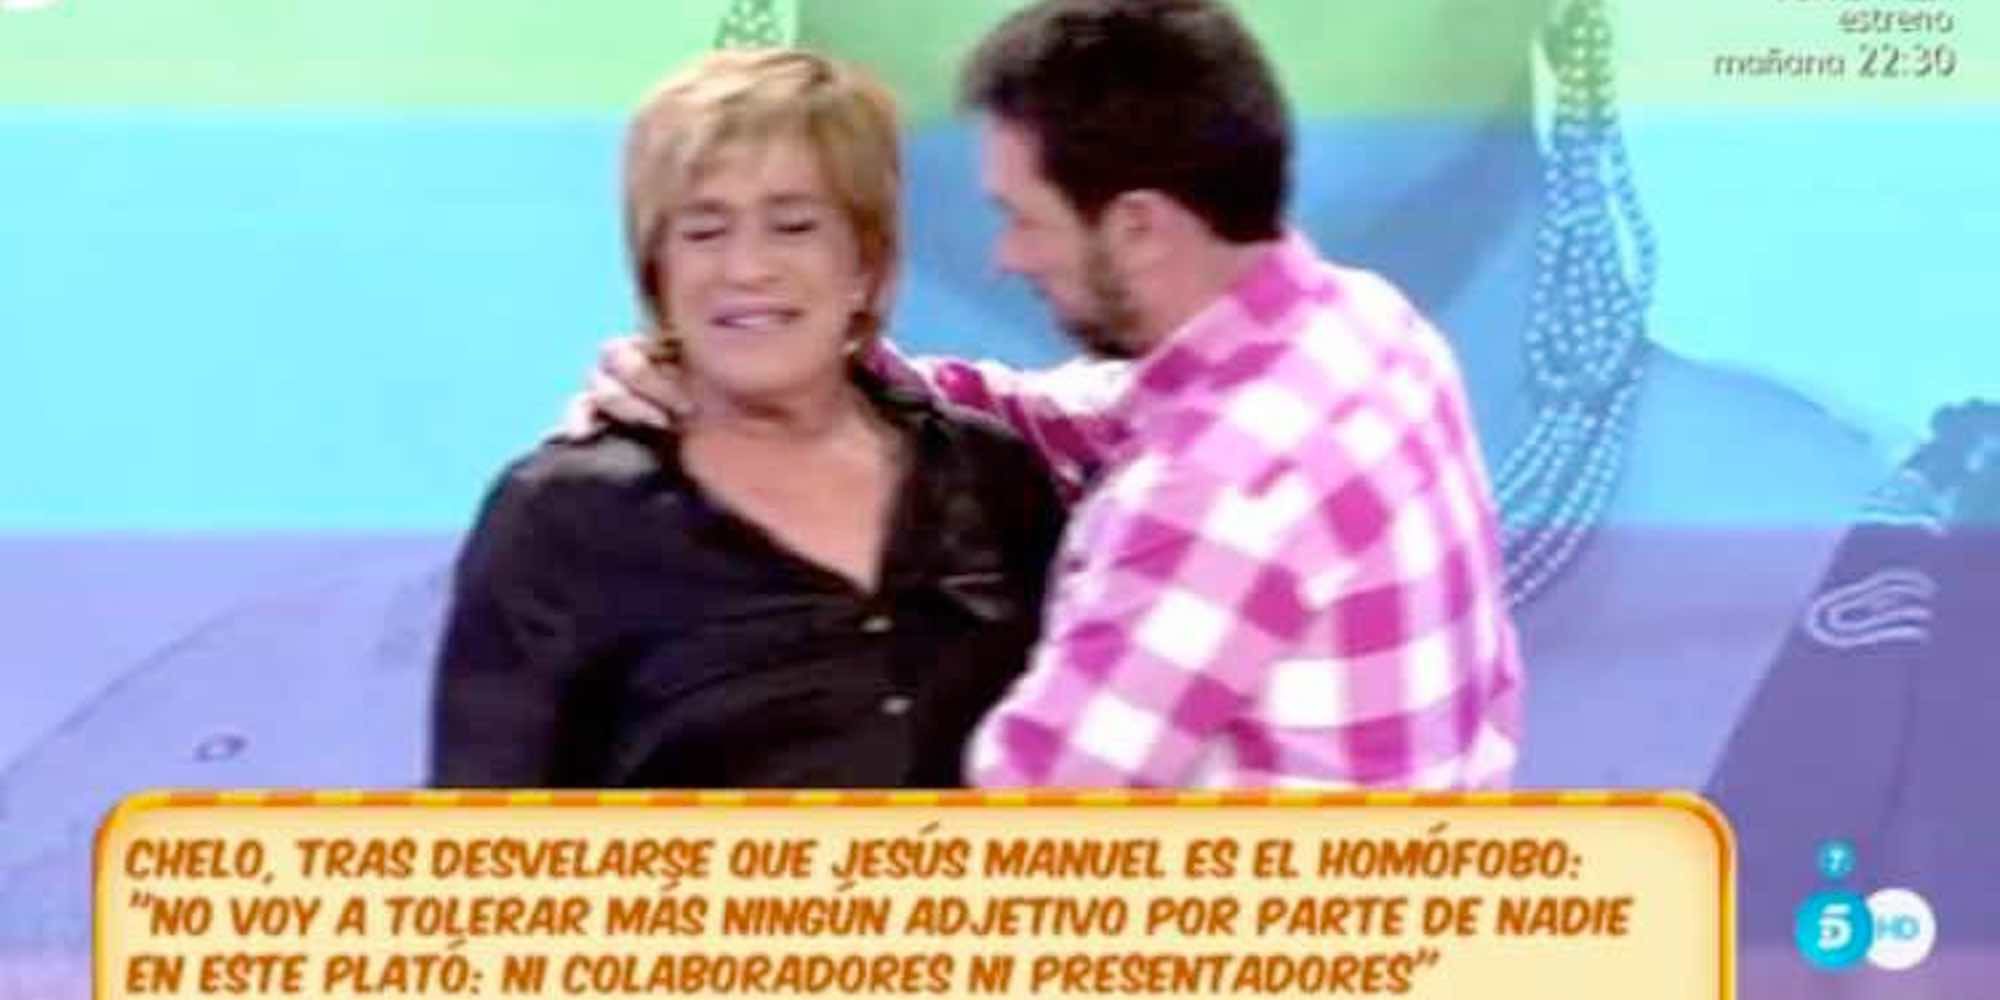 Jesús Manuel tras el polémico mensaje sobre Chelo García Cortés: "Vamos a ser amigos por muchas razones"